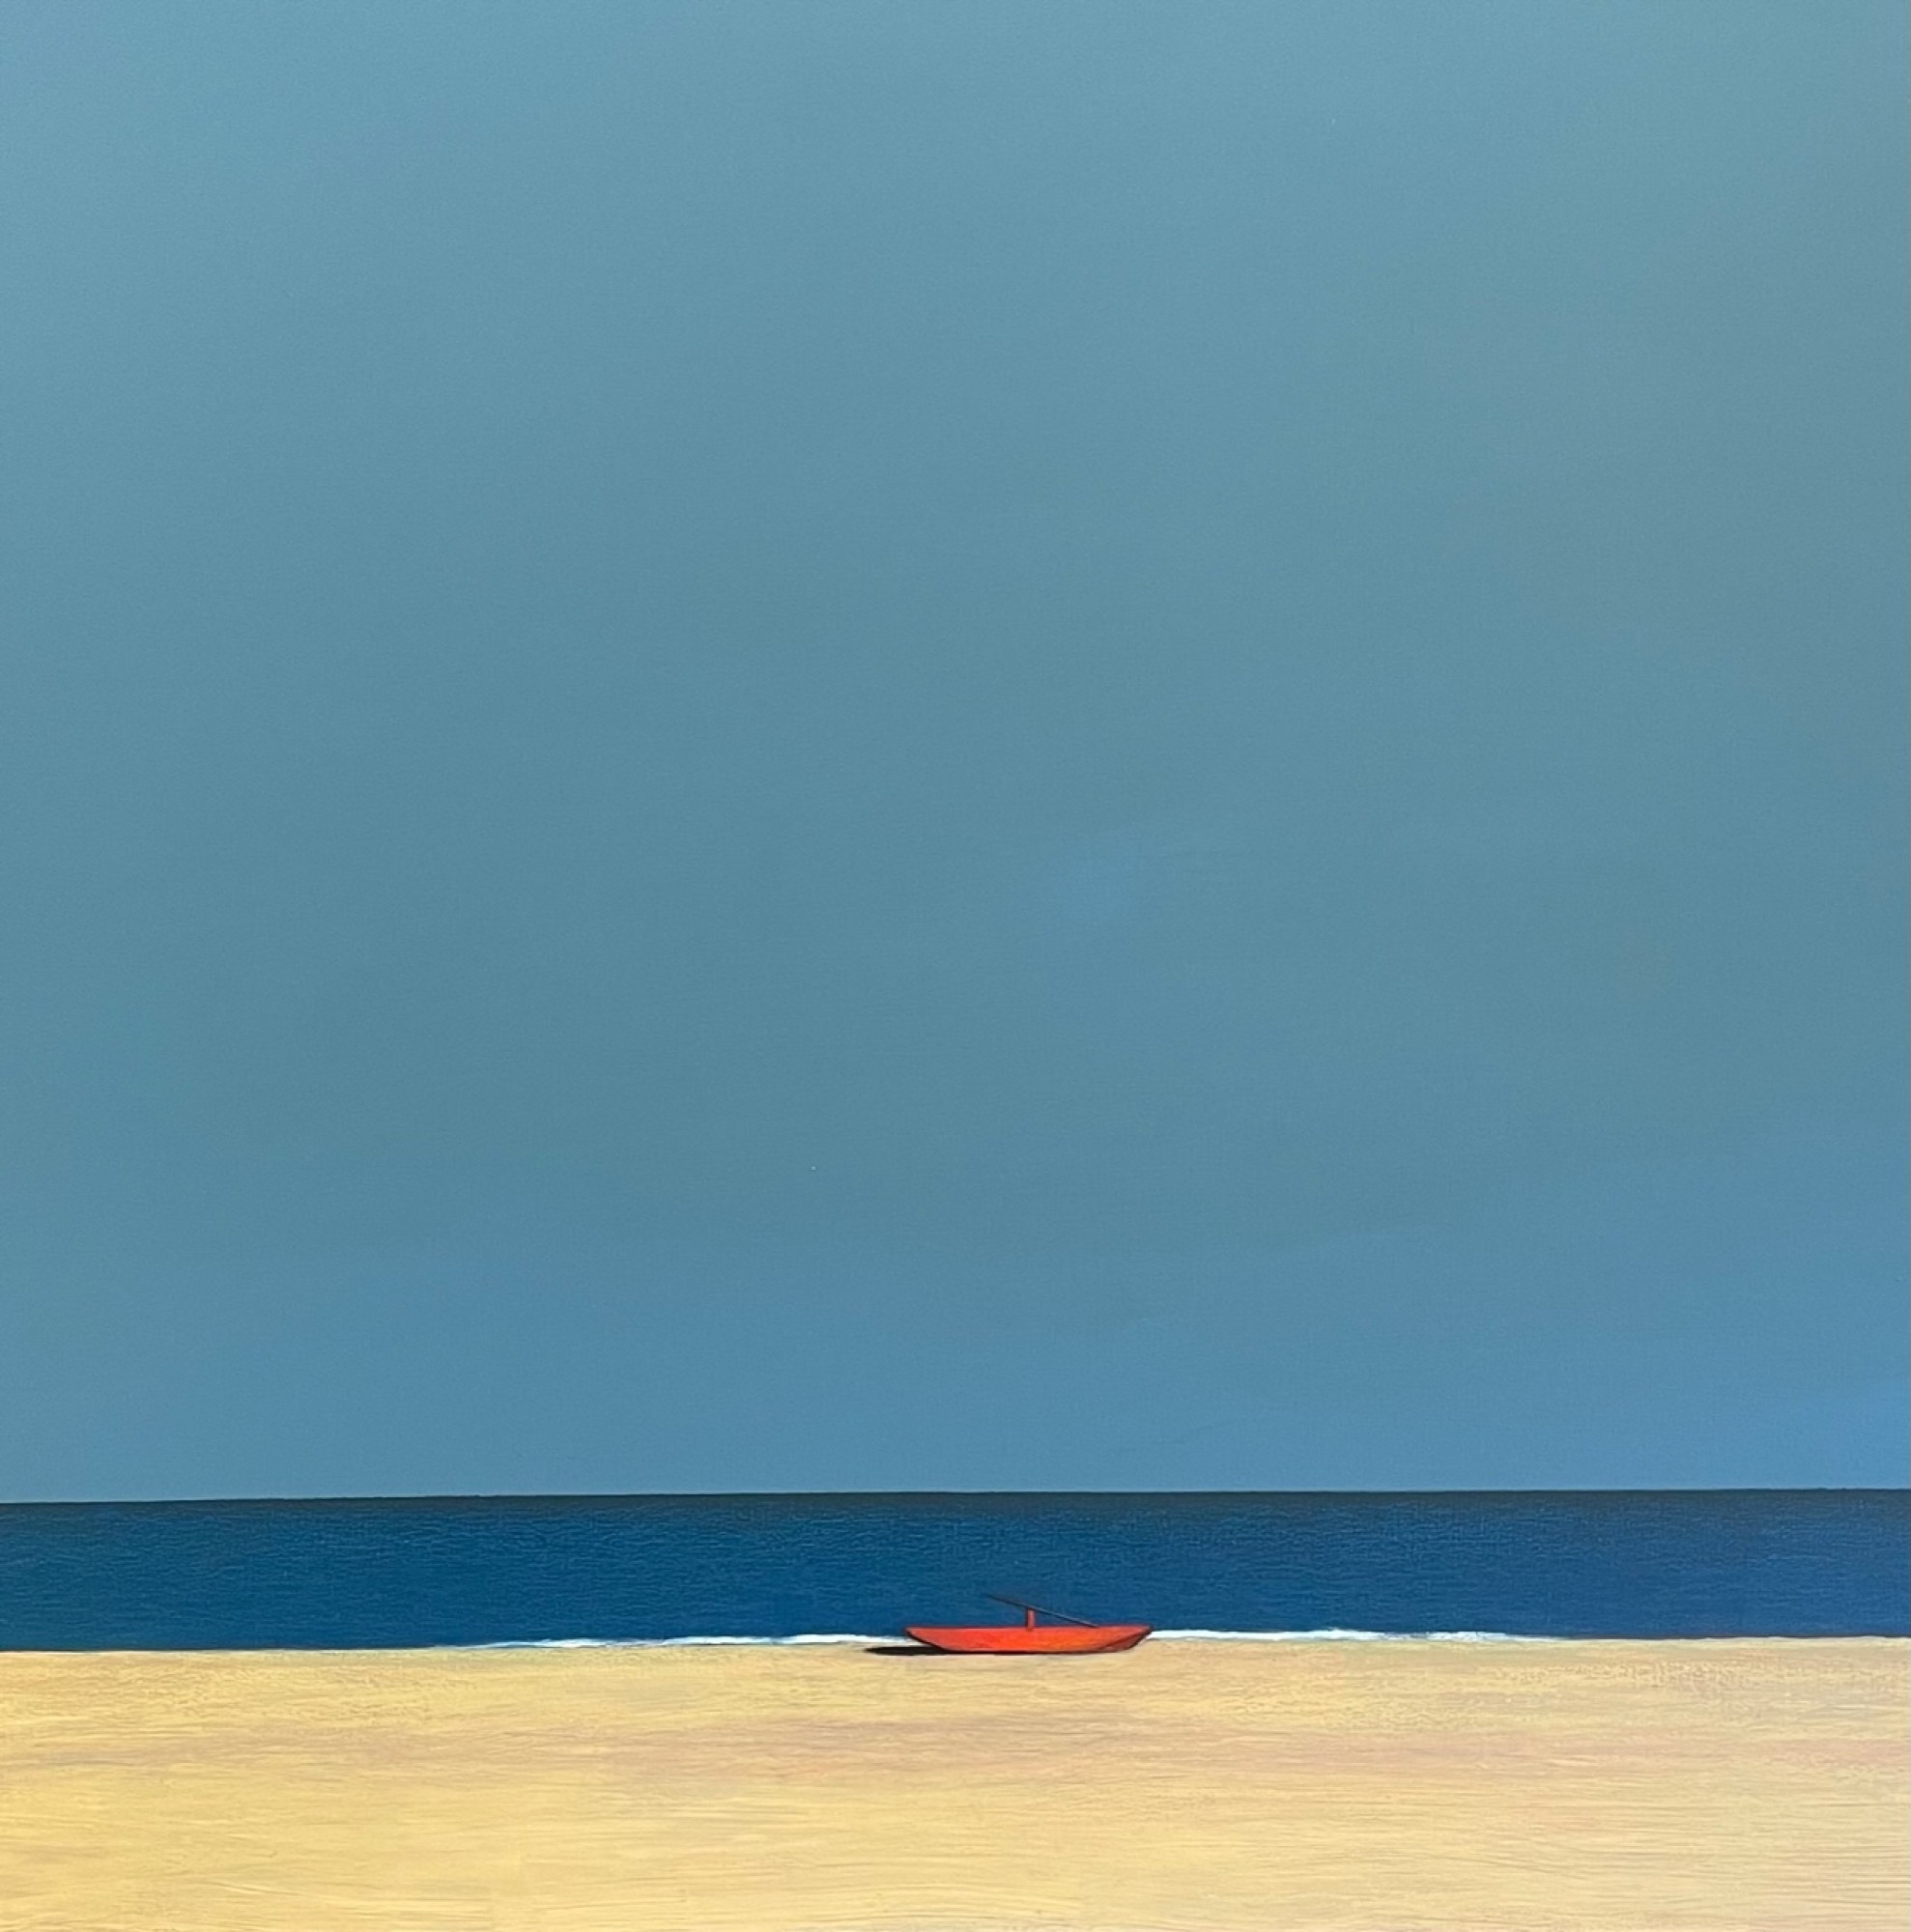 Ein Pastell auf Leinwand Gemälde, das ein rotes Boot auf einem Sandstrand zeigt.